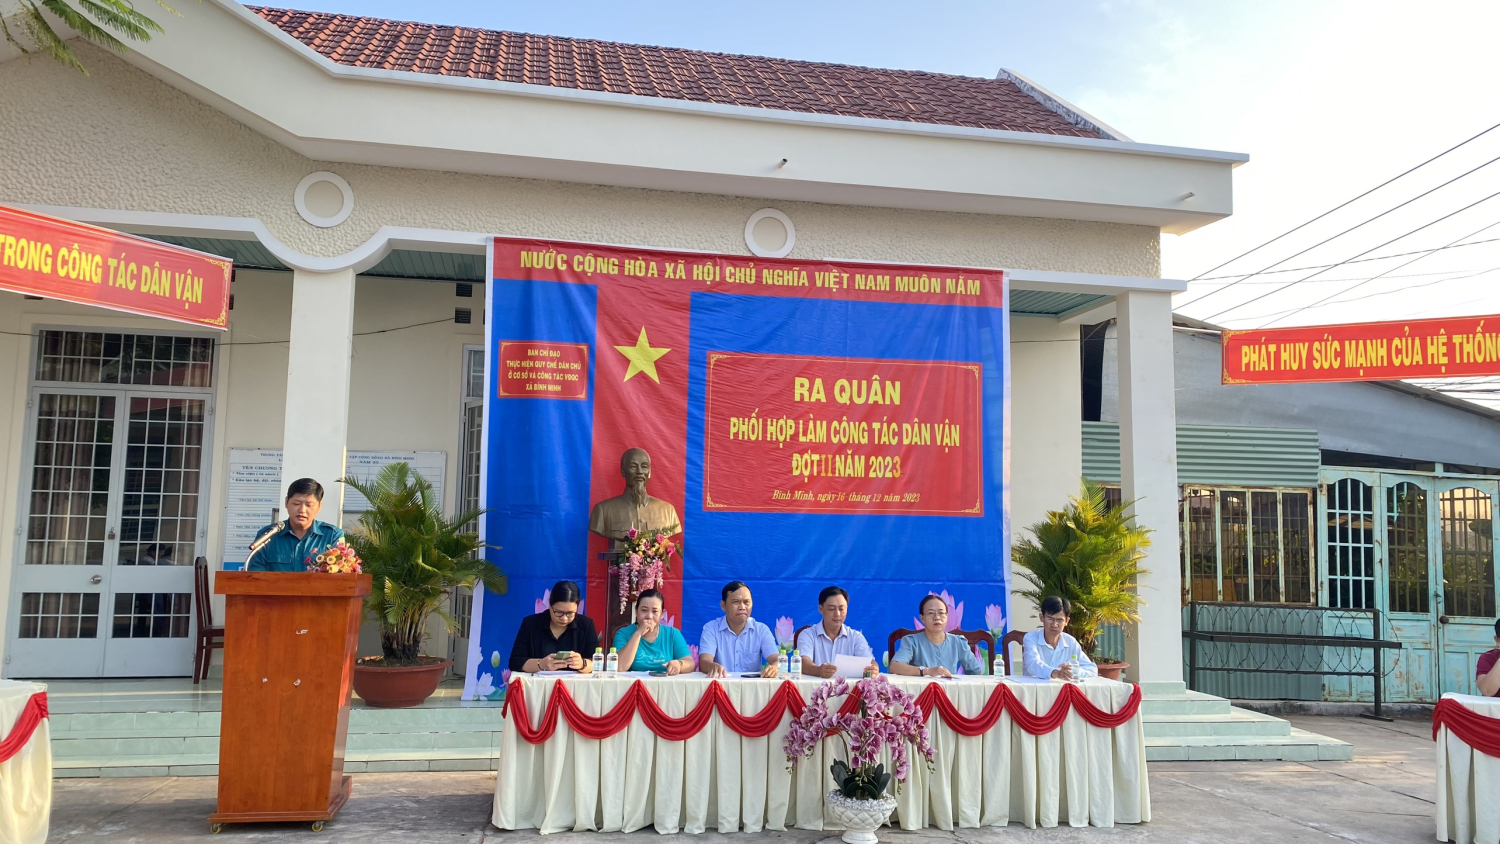 Ban chỉ đạo liên ngành công tác vận động quần chúng xã Bình Minh tổ chức lễ ra quân làm công tác dân vận đợt 2 năm 2023